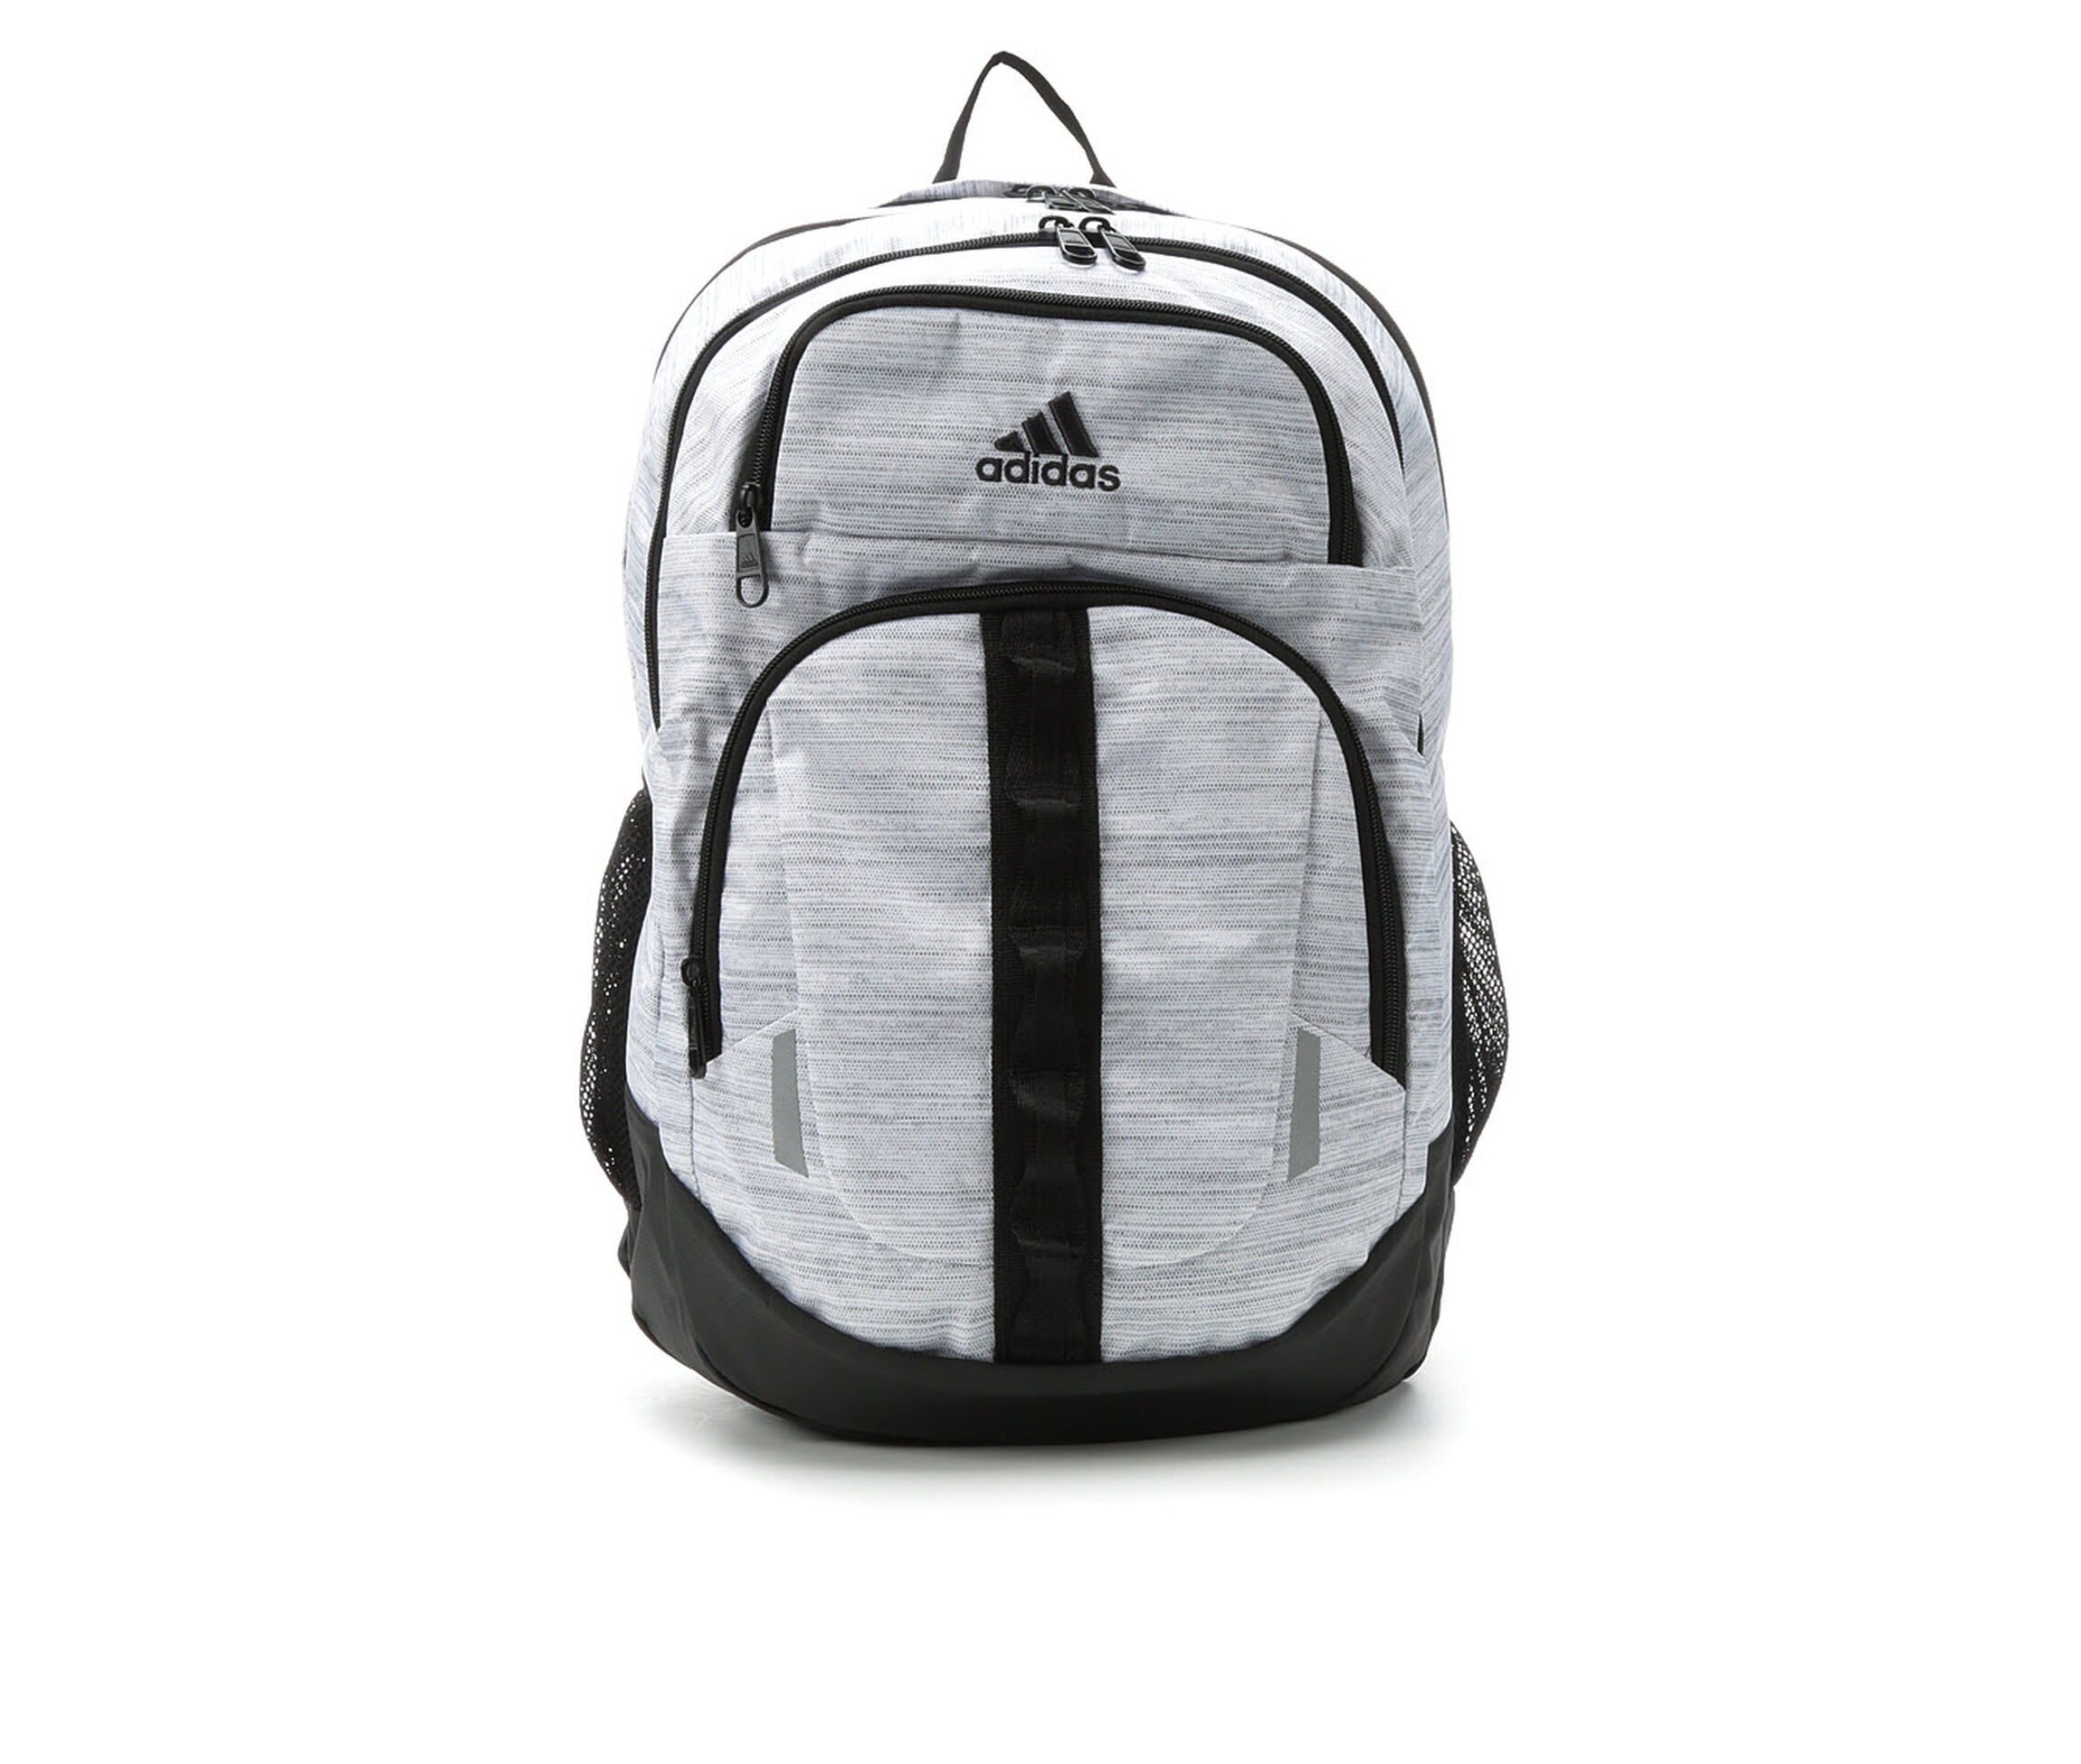 Adidas Prime V Backpack